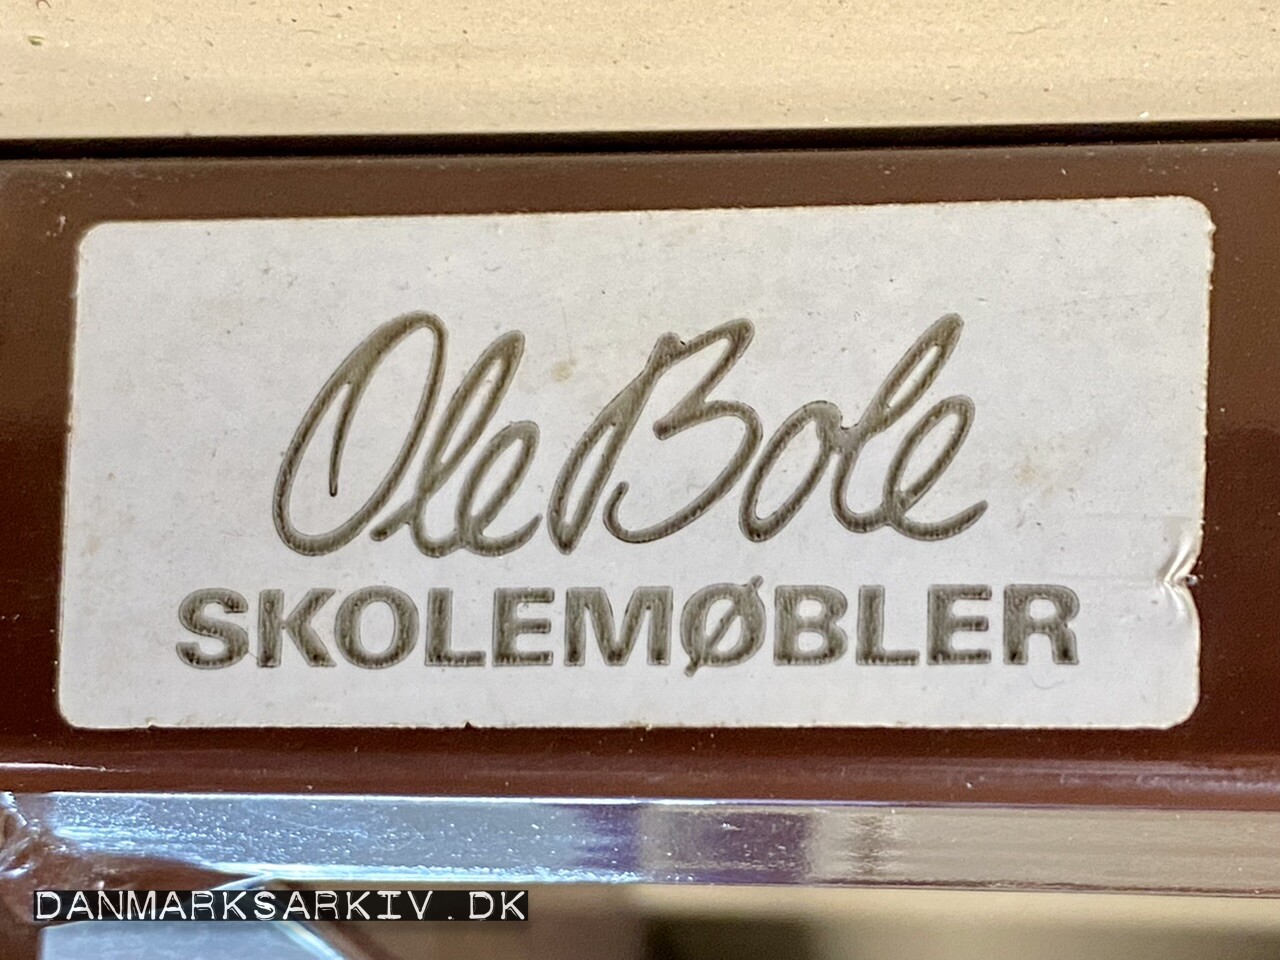 Ole Bole Skolemøbler blev fremstillet af Bent Kroghs Stålmøbelfabrik i Skanderborg